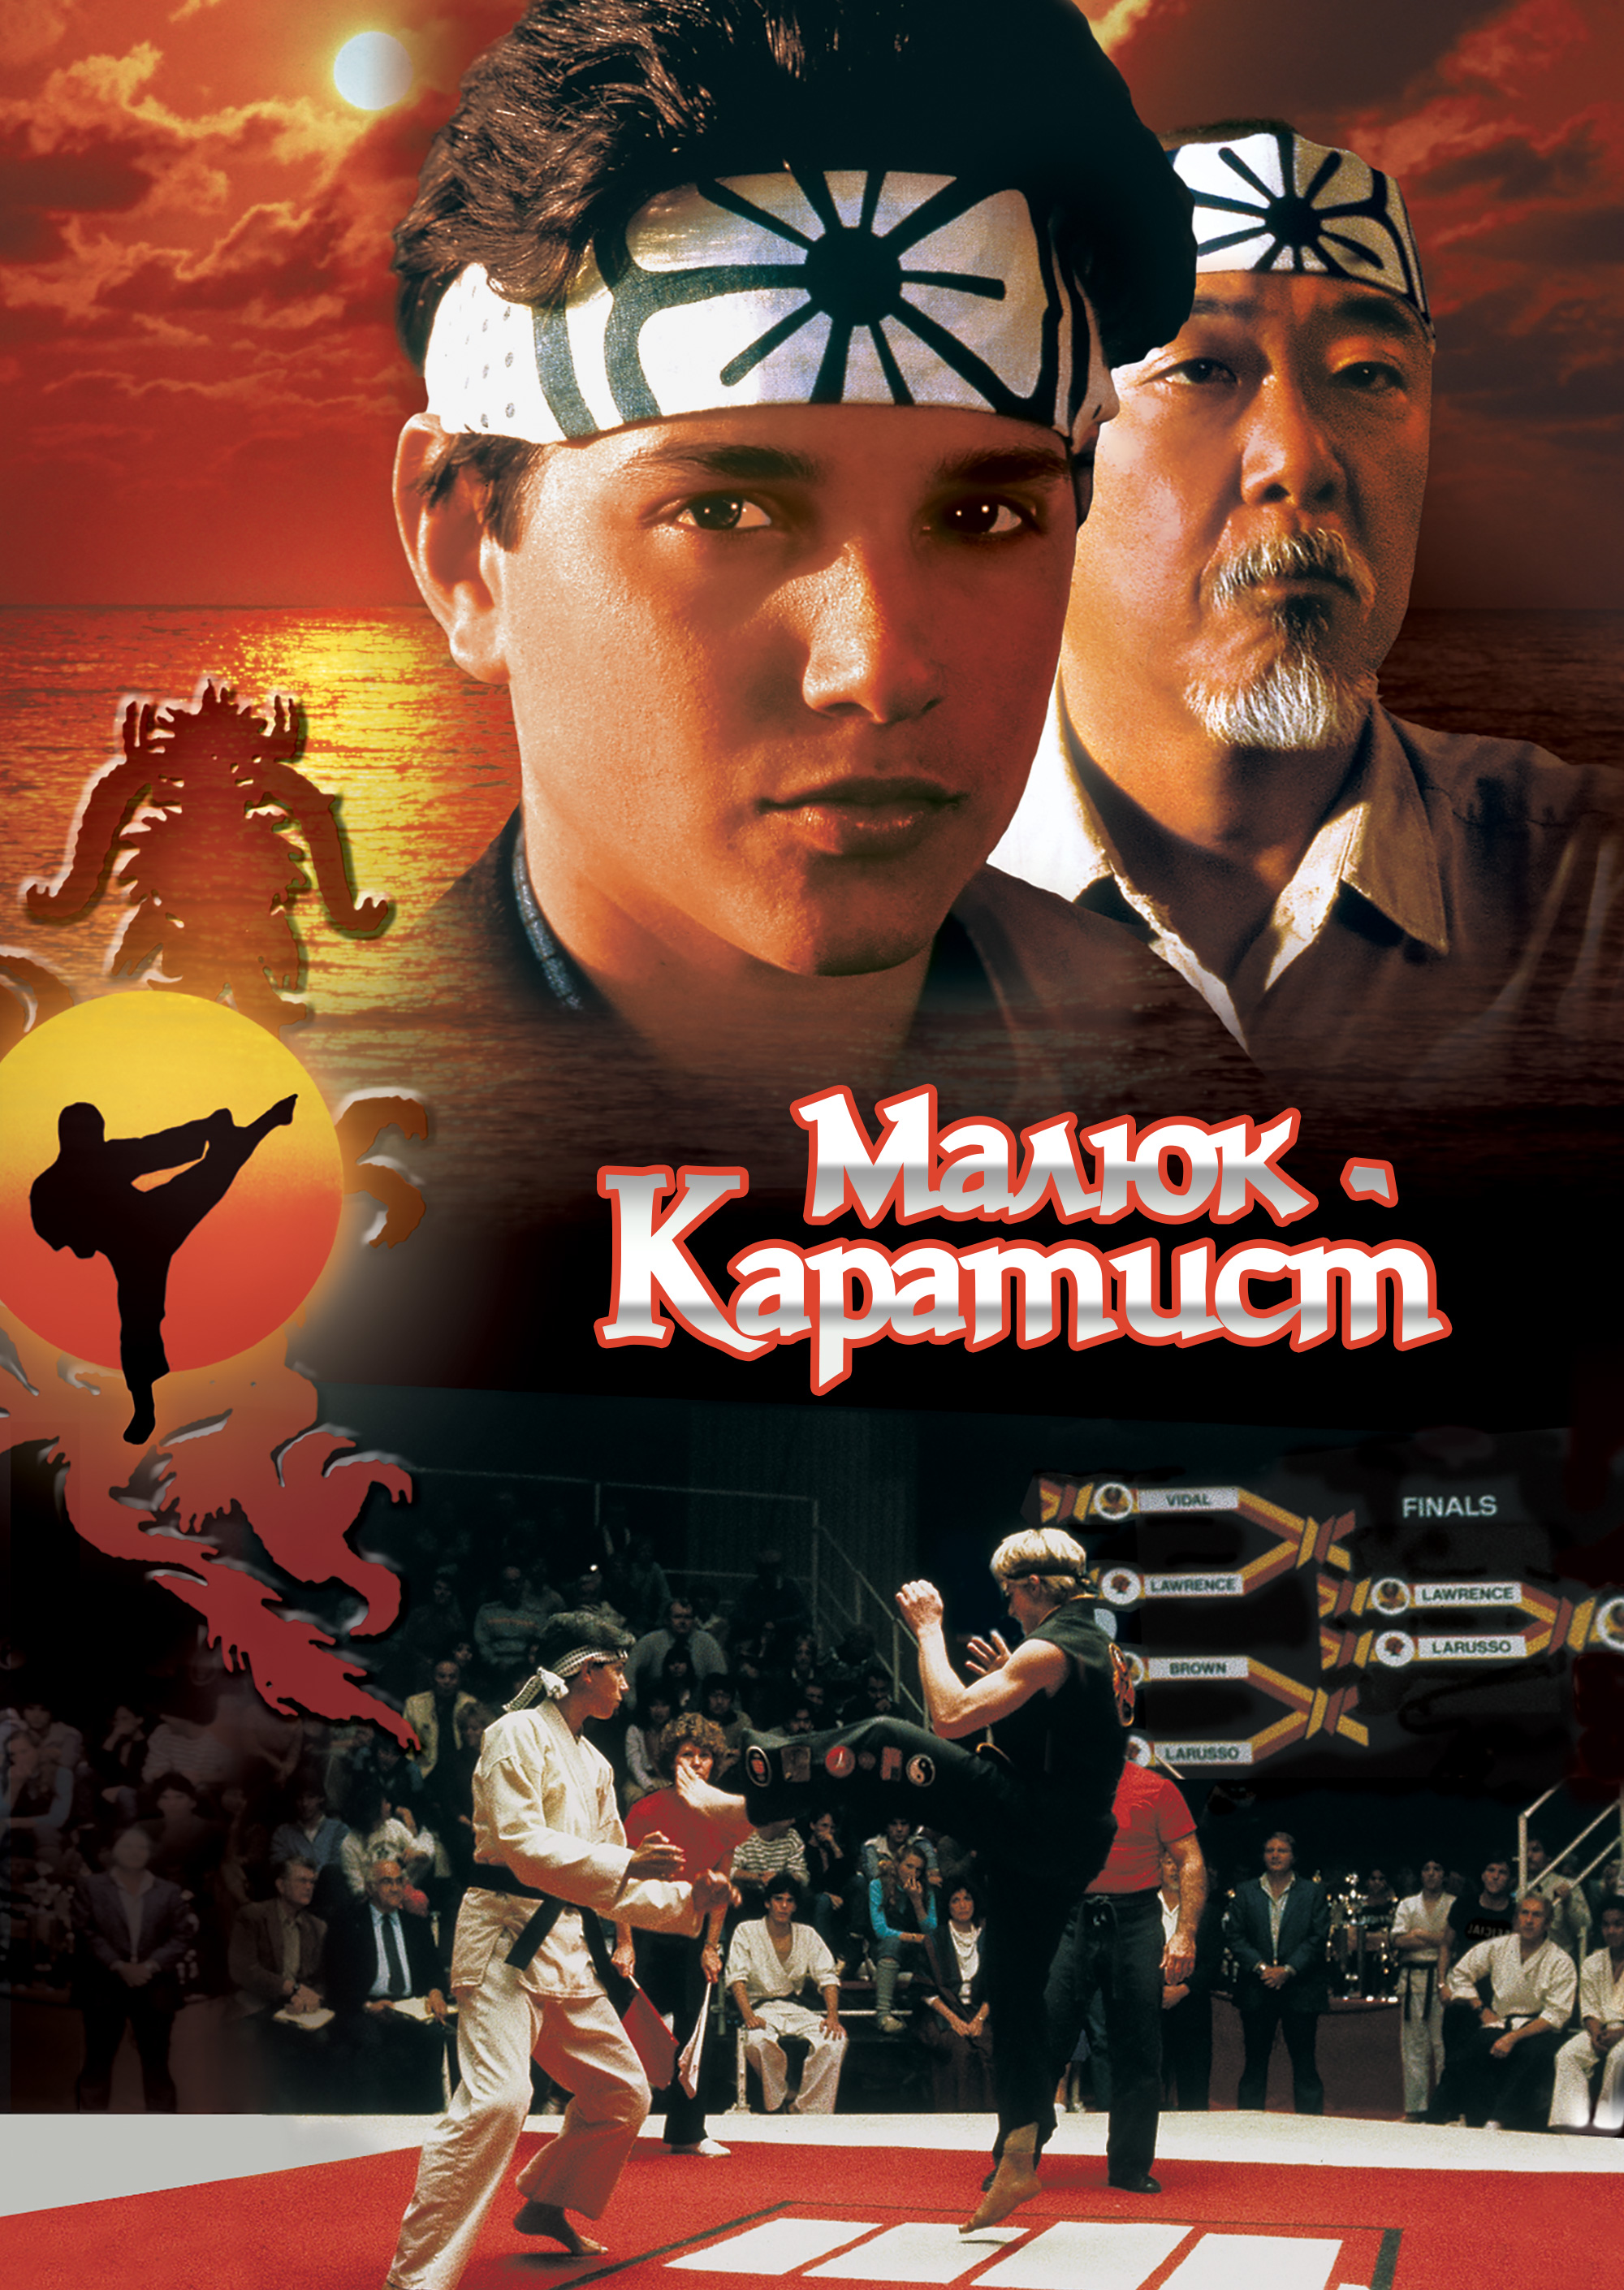 Малюк-каратист. Антологія / The Karate Kid. Anthology (1984-2010) BDRip 1080p H.265 Ukr/Eng | Sub Ukr/Eng